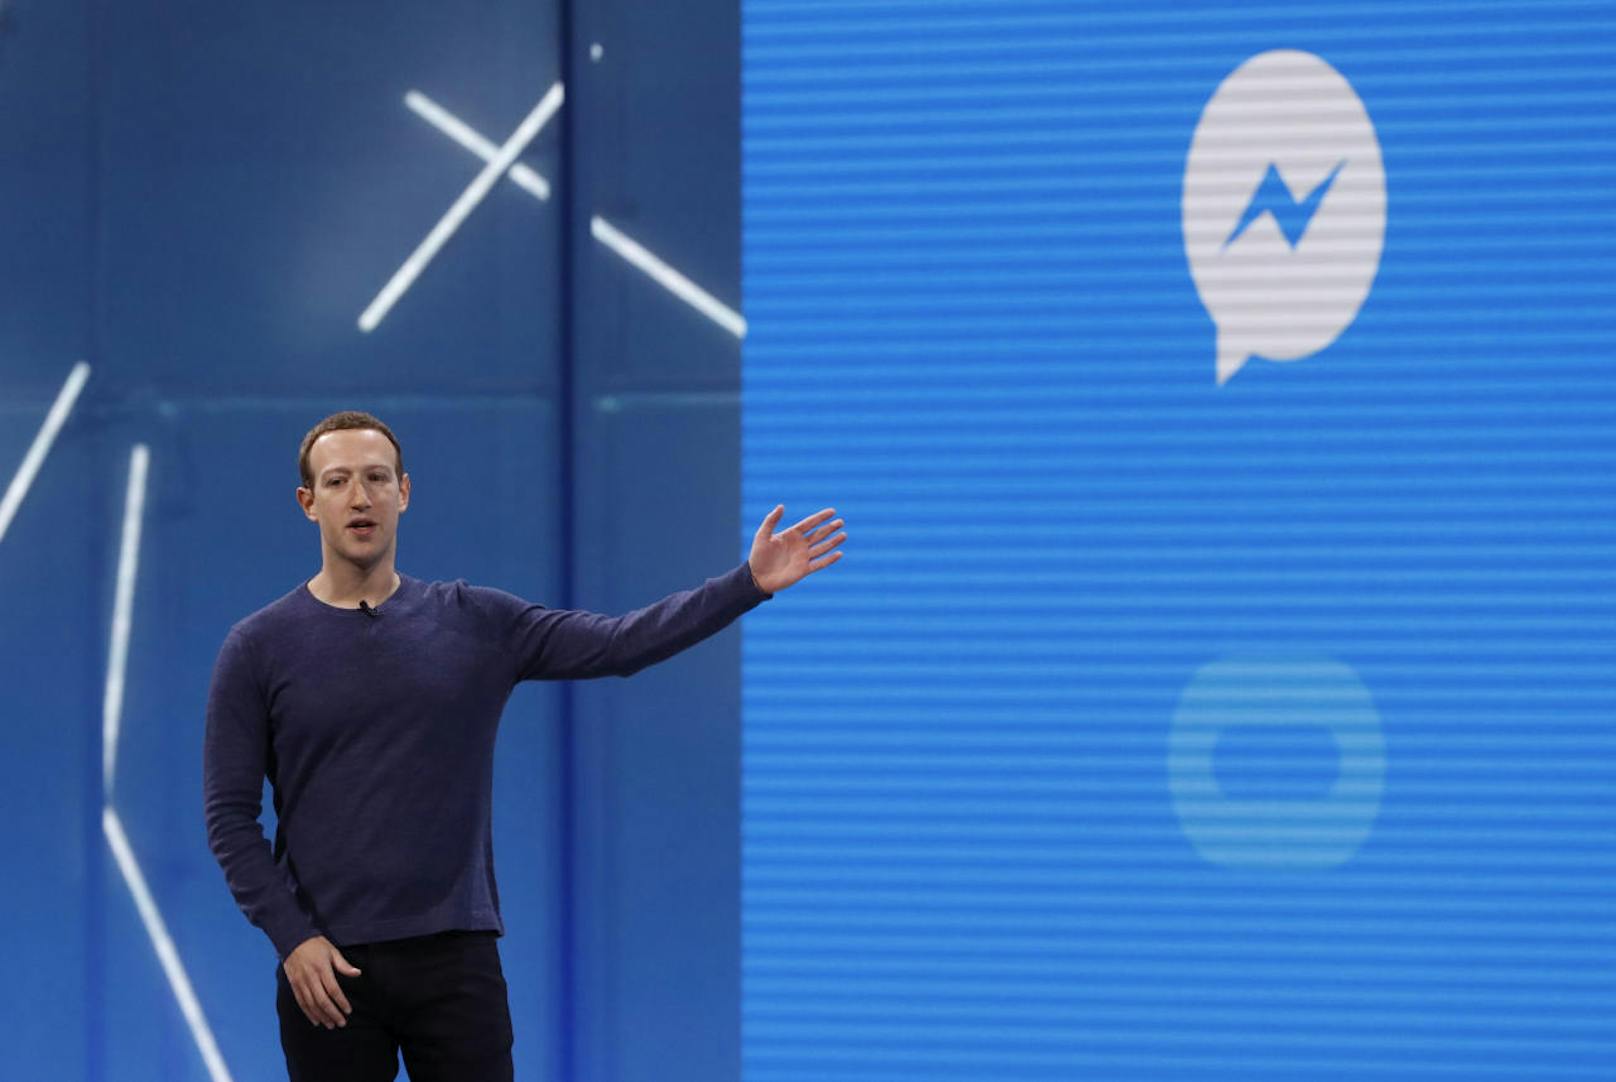 Um die Werbung noch gezielter auszuspielen, sei es denkbar, dass Facebook beginnt, wie bei seinen anderen Diensten Daten aus den Konversationen zu nutzen.